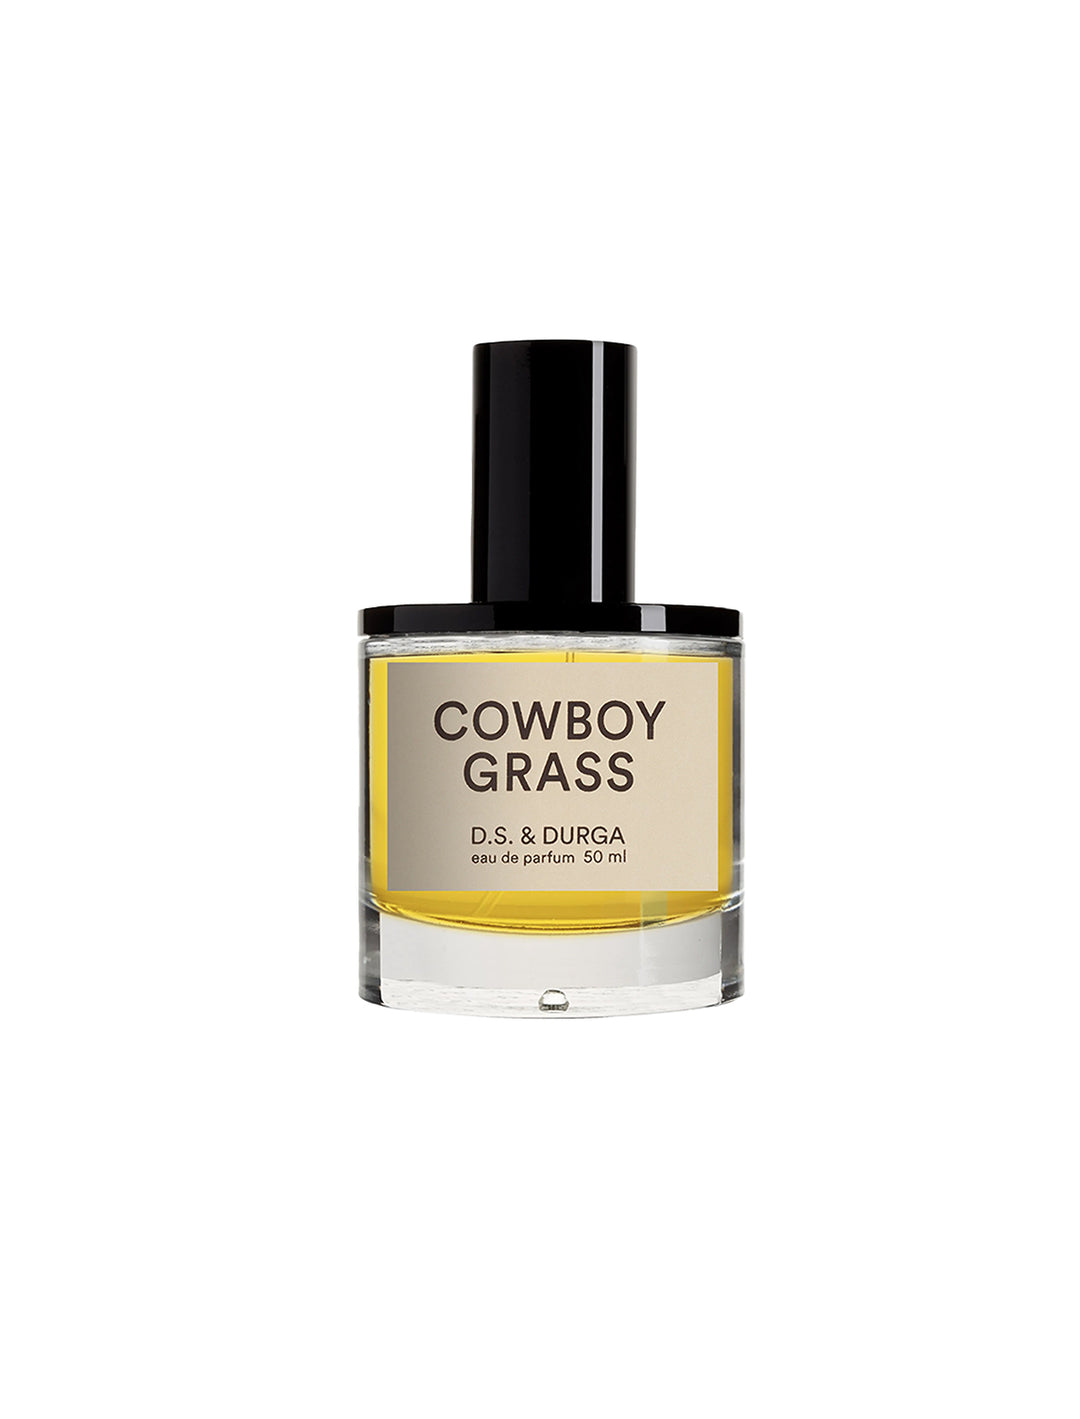 Front view of D.S. & Durga's cowboy grass 50 ml eau de parfum.